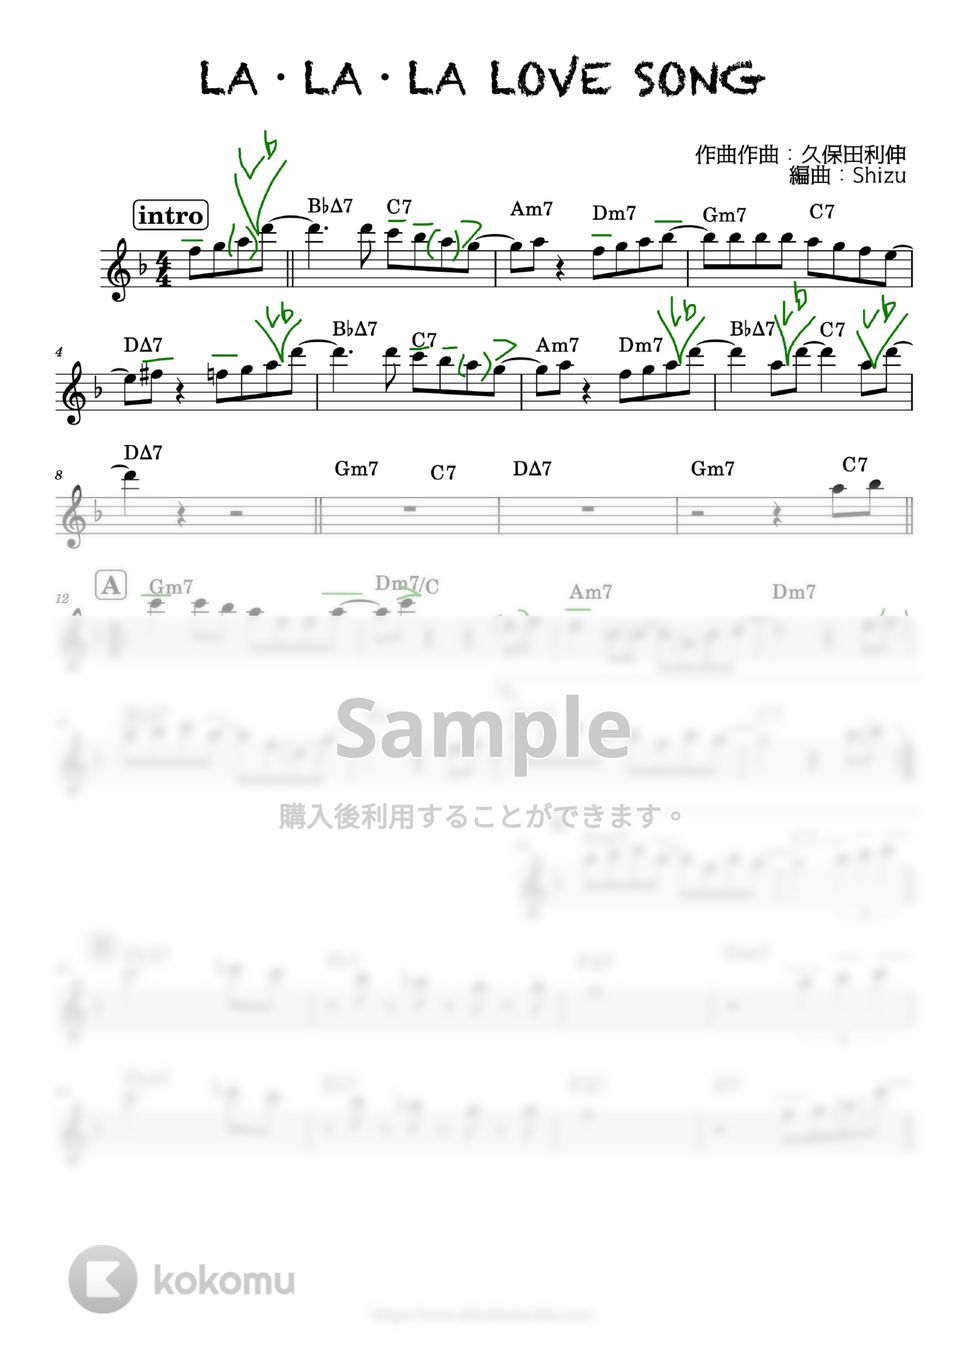 久保田利伸 - LA・LA・LA LOVE SONG (久保田利伸/sax/カラオケ) by syzkah